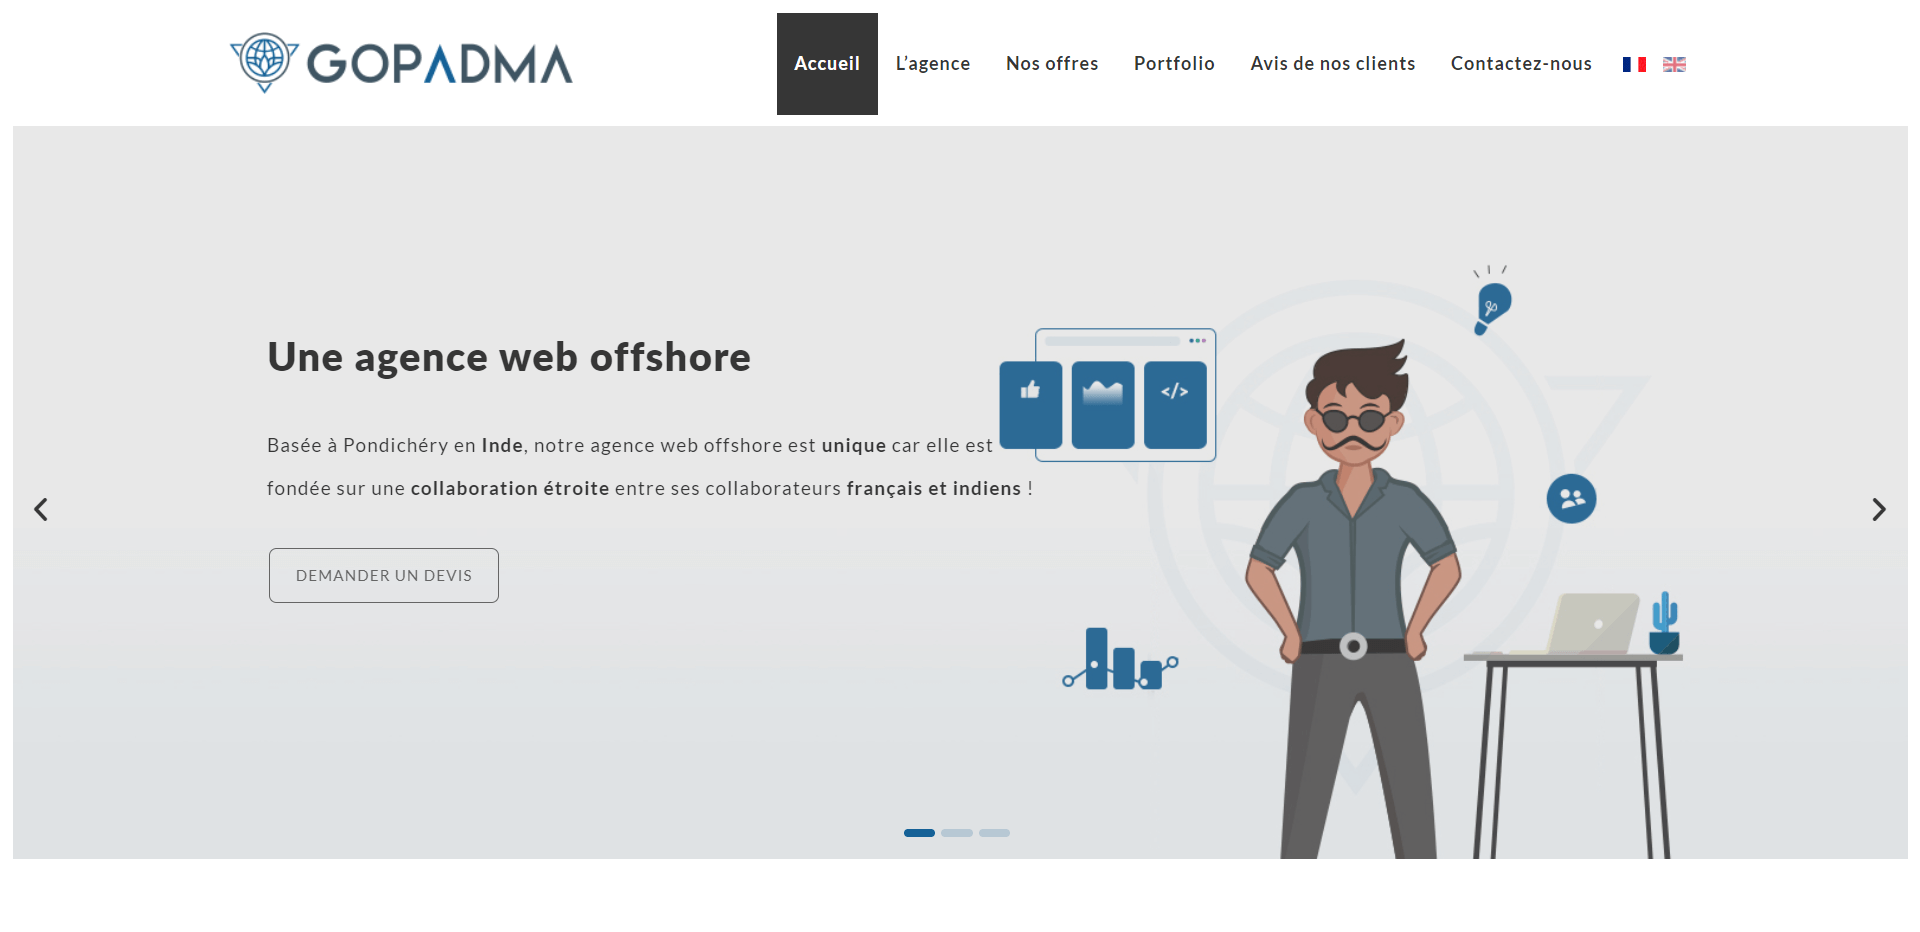 gopadma agence web offshore